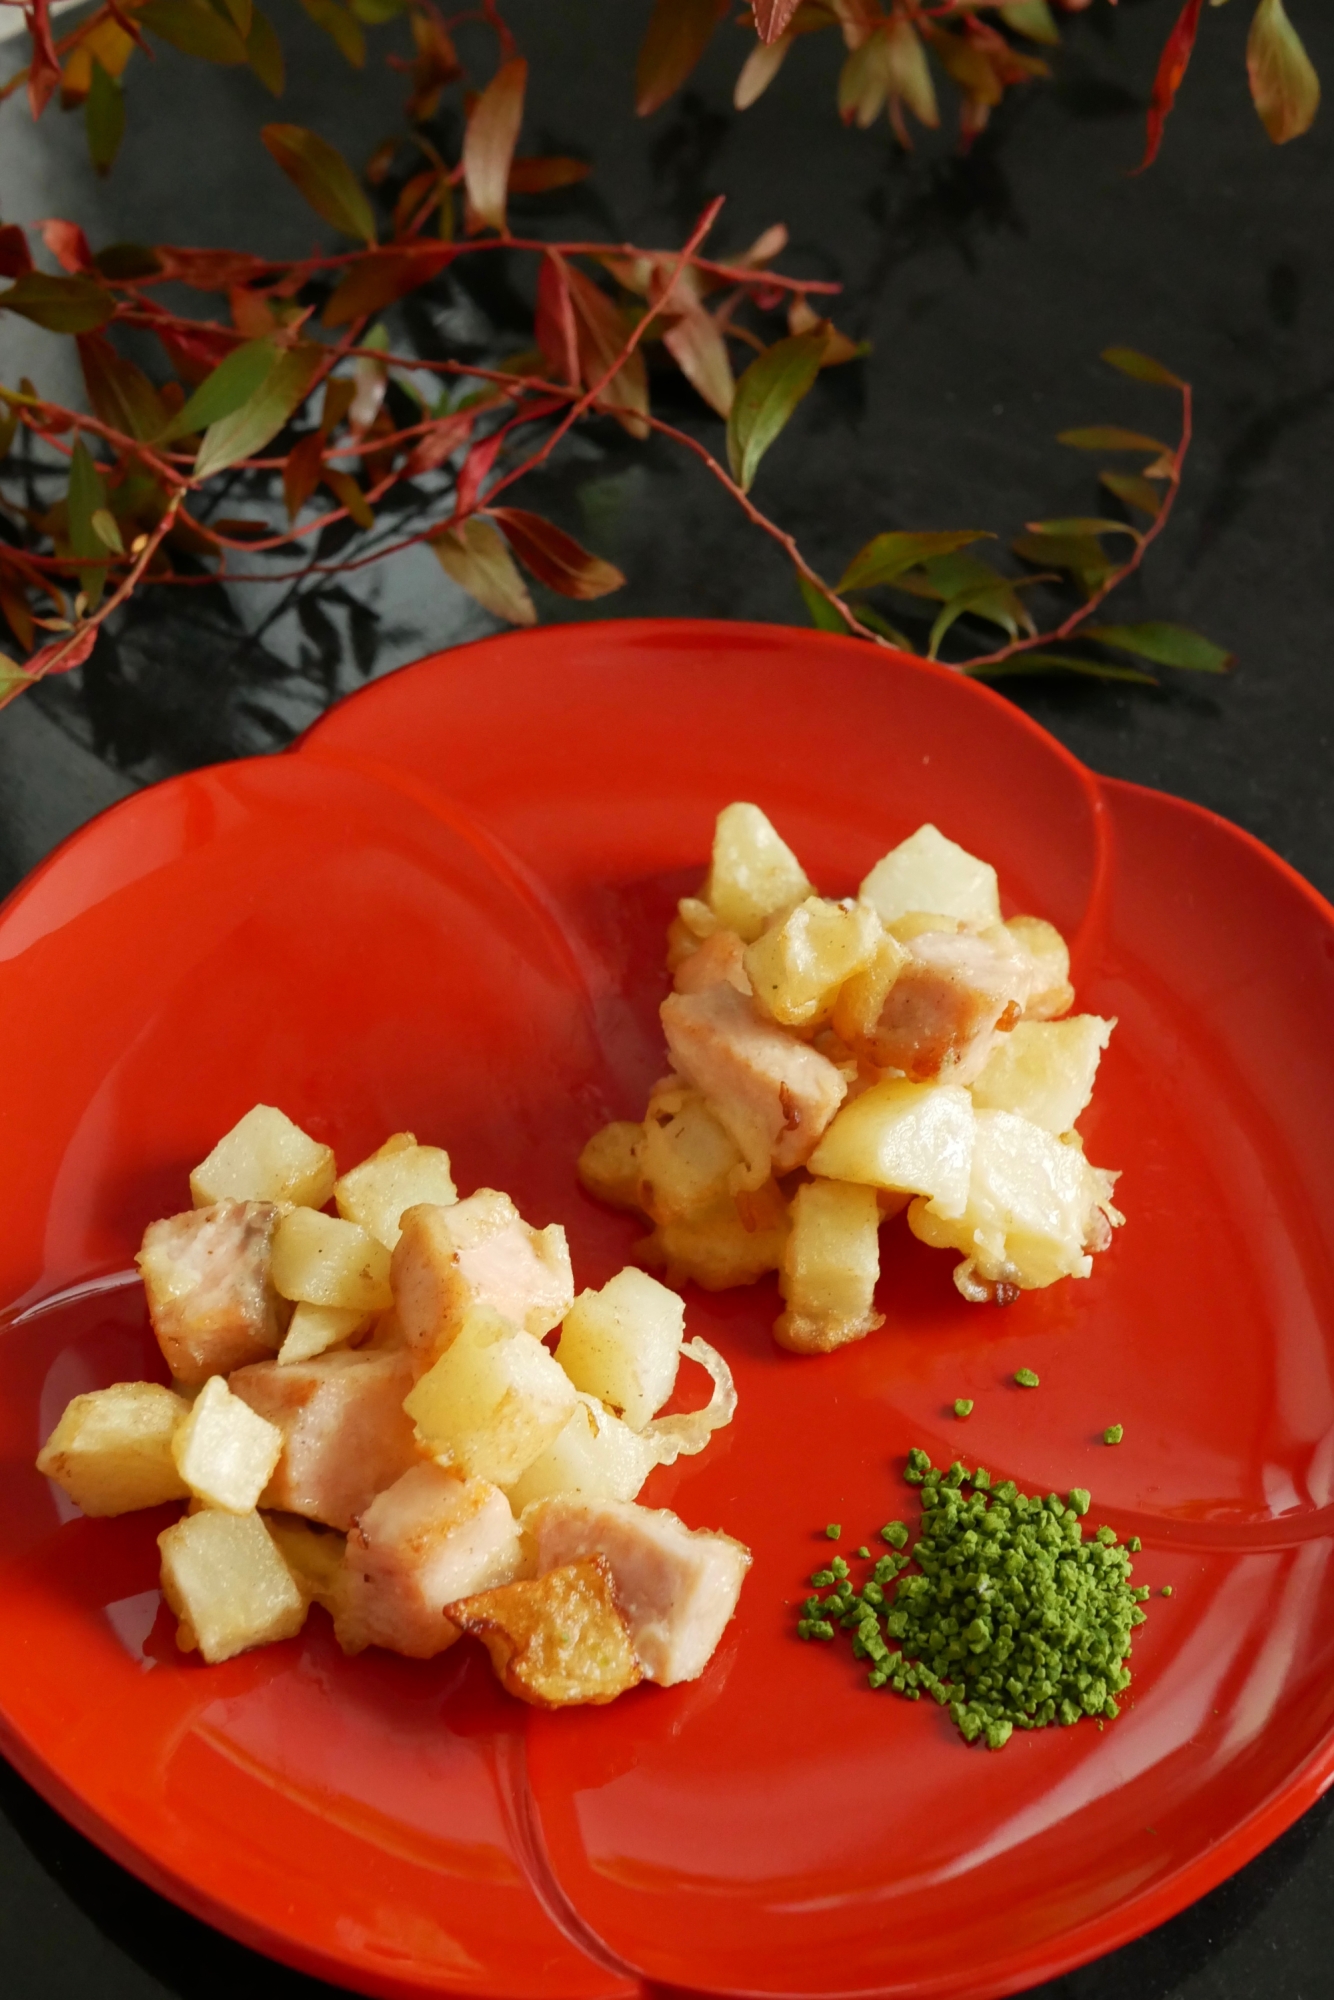 抹茶塩で食べる秋鮭とジャガイモのホクホクかき揚げ